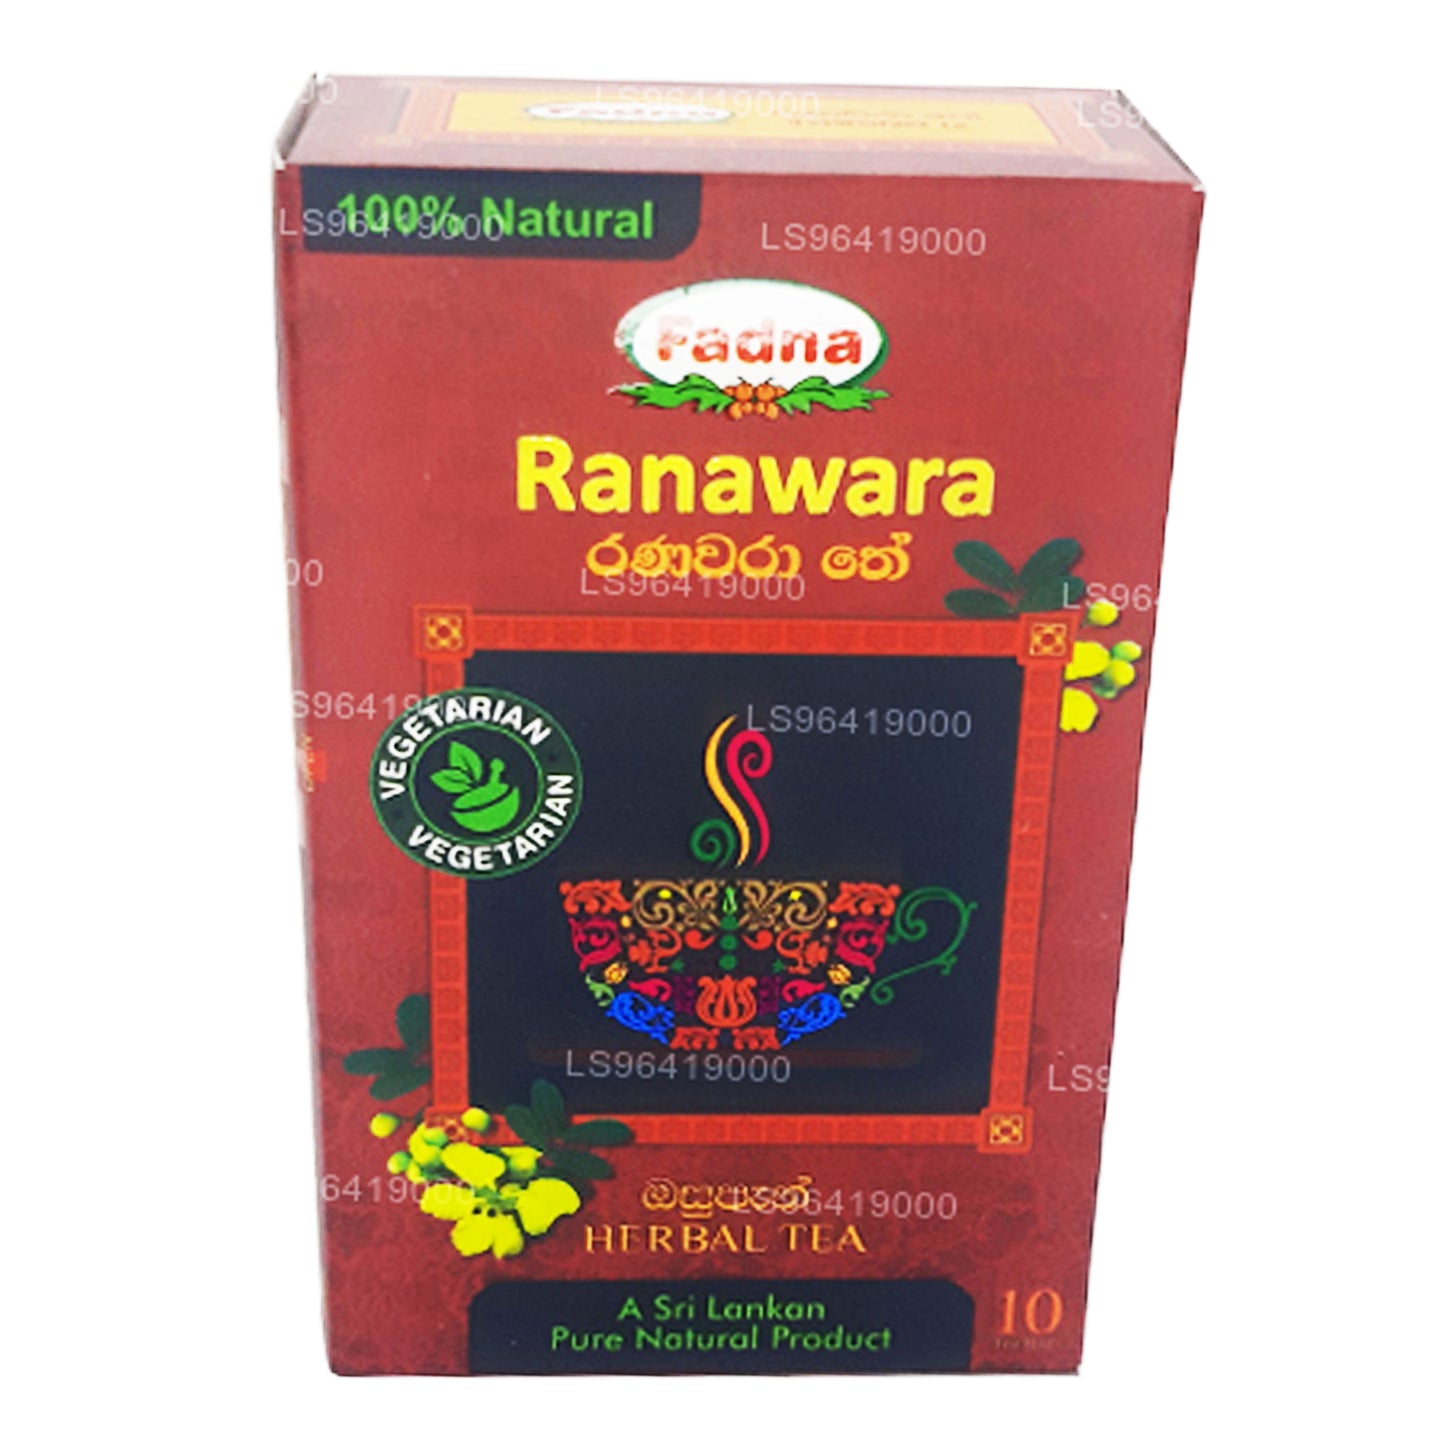 Fadna Ranawara urtete (20g) 10 teposer